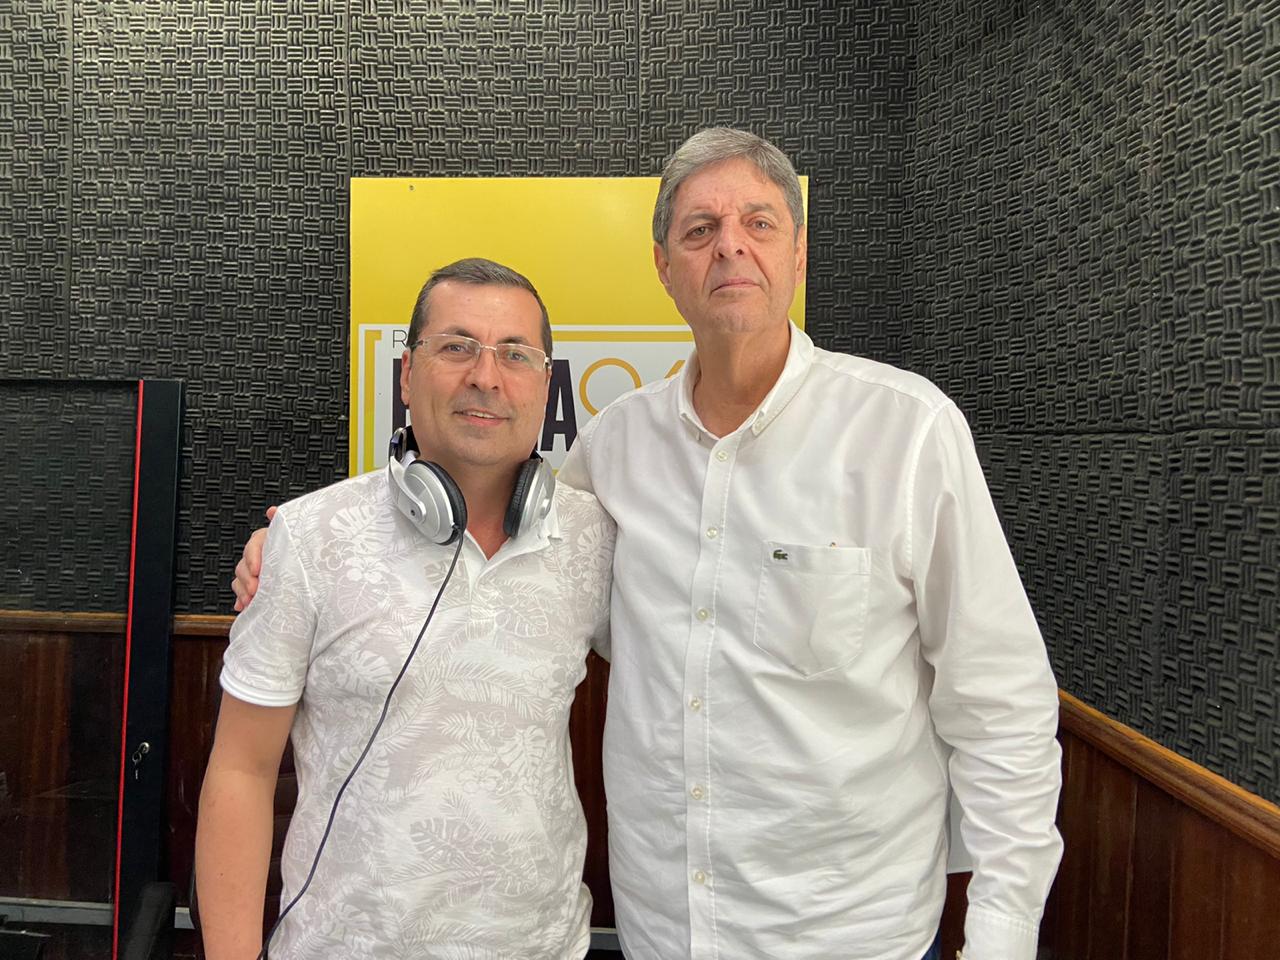 Renato Cunha, Presidente do SINDAÇÚCAR, em entrevista na Rádio Folha PE FM, sobre balanço positivo do setor em 2019, dia 23/dezembro/2019